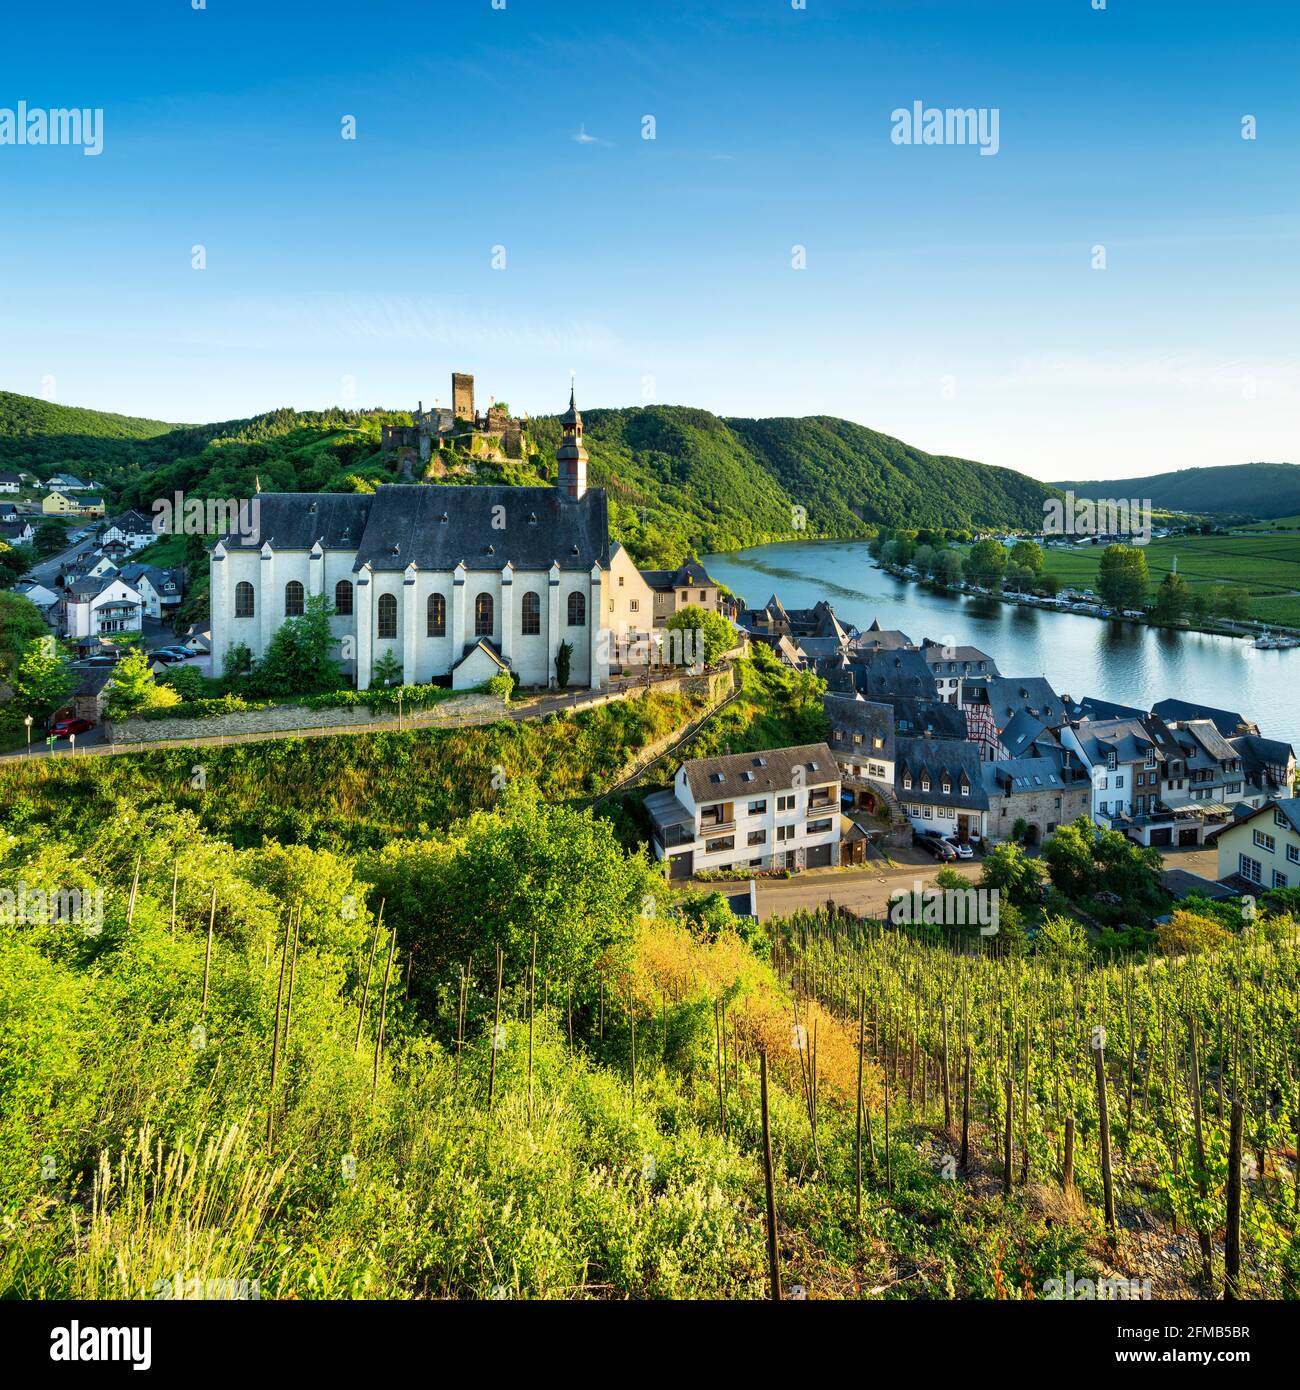 Germania, Renania-Palatinato, Beilstein (Mosel), vista nella valle della Mosella al villaggio del vino di Beilstein con la Chiesa Carmelitana, rovine del castello di Beilstein e vigneti Foto Stock